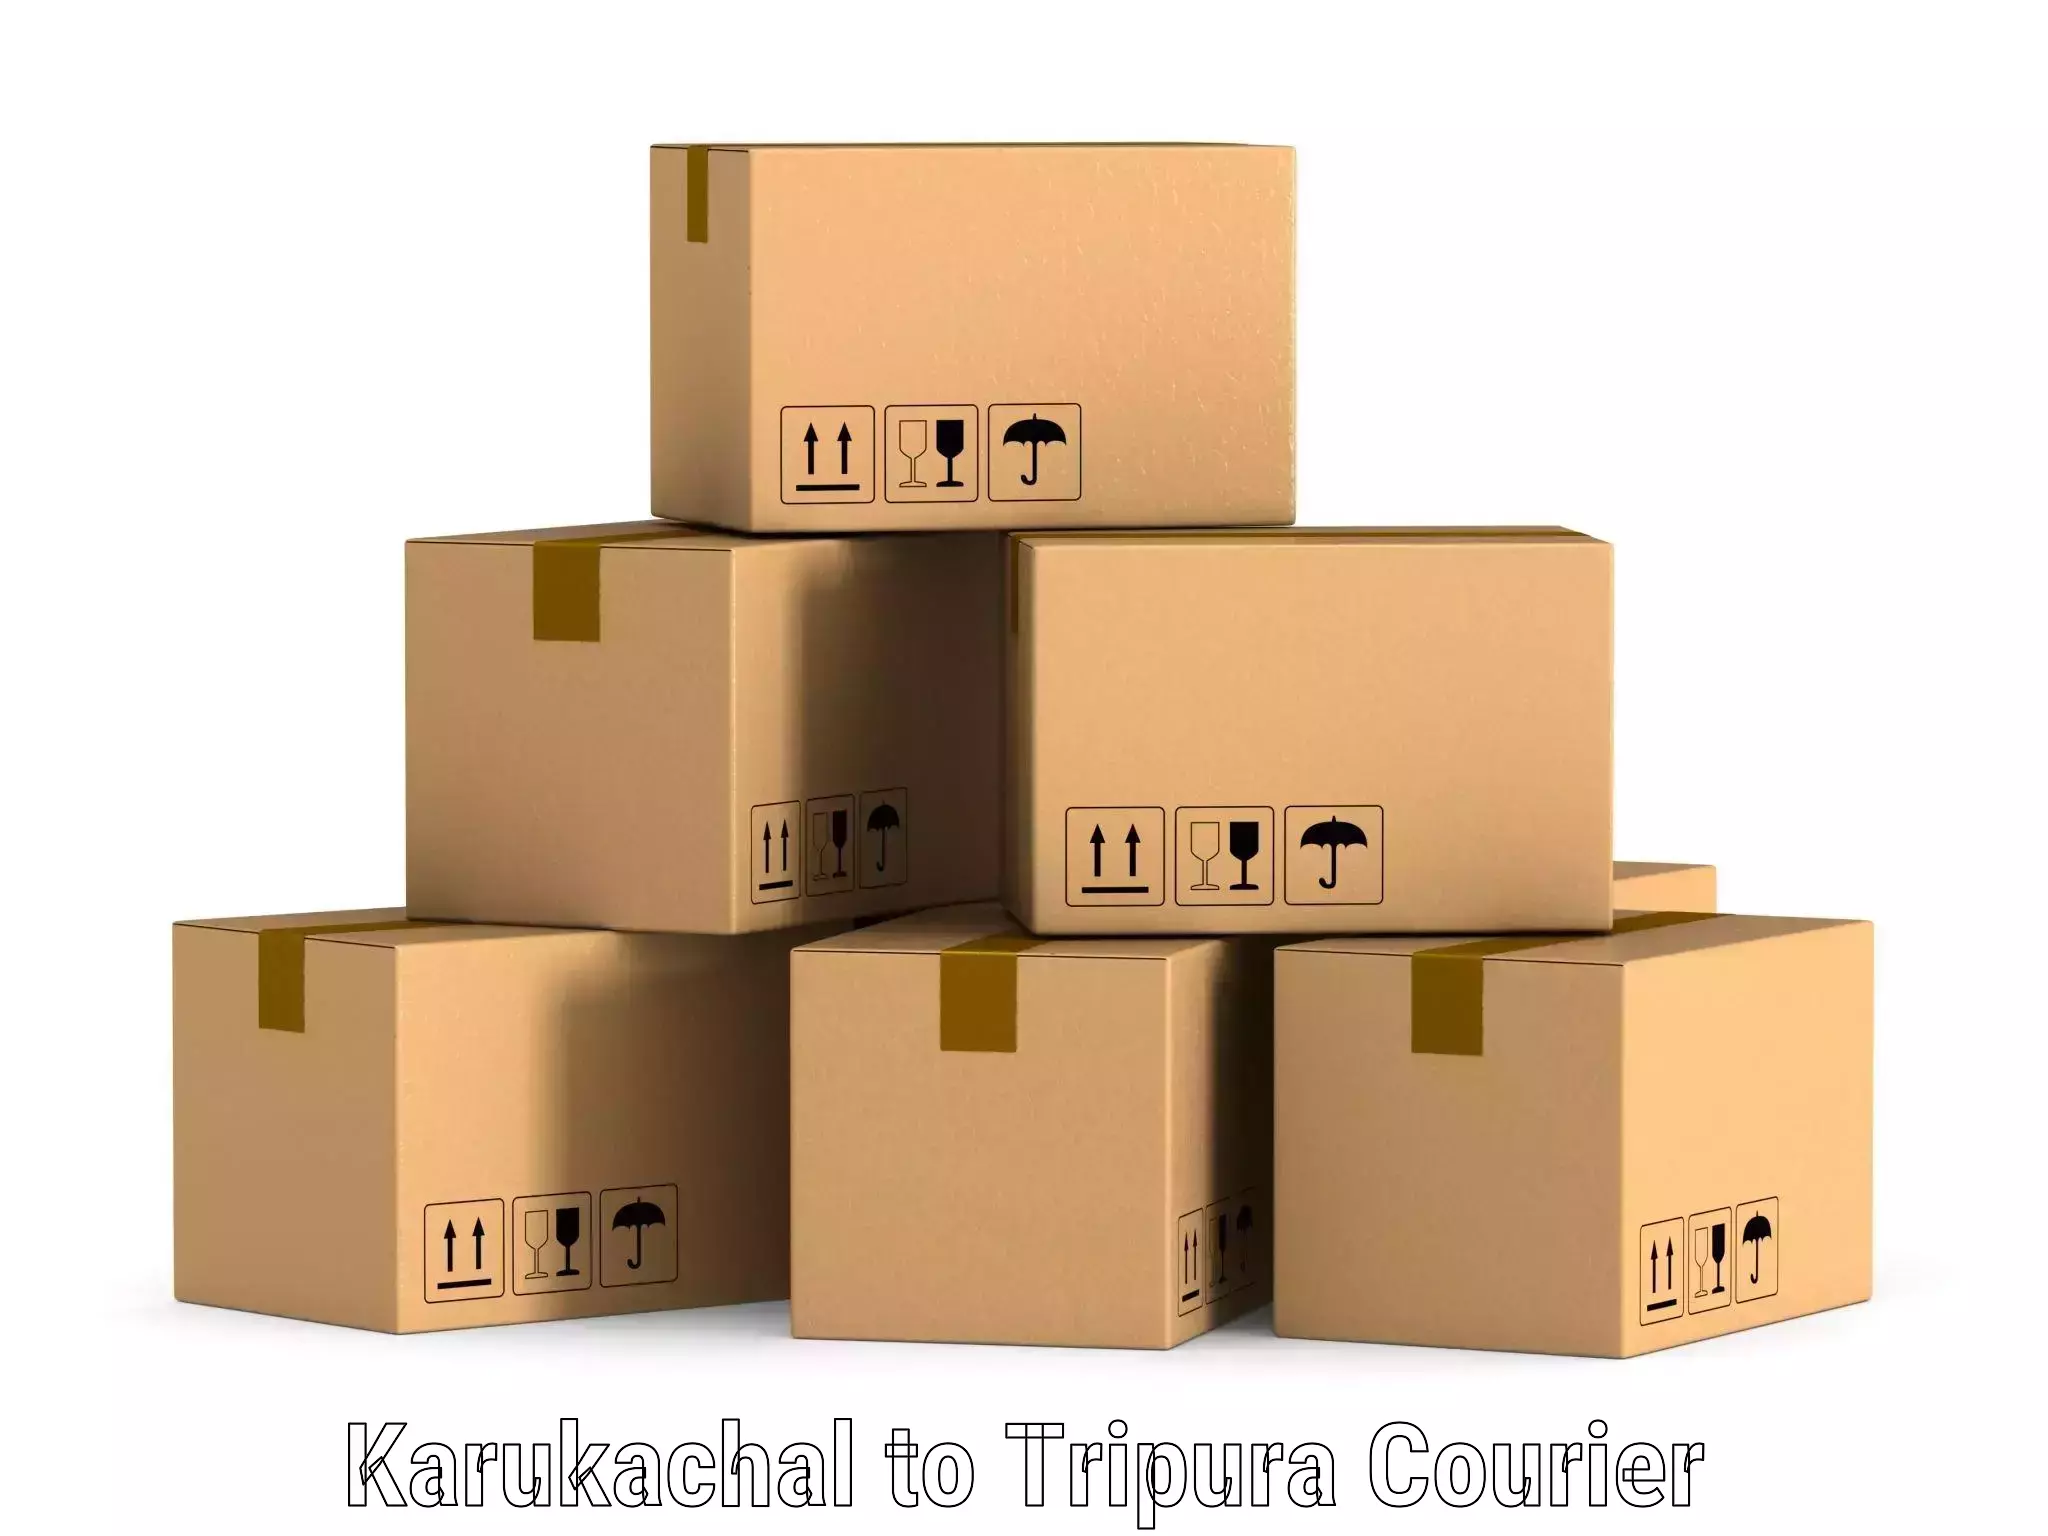 Regular parcel service Karukachal to Aambasa